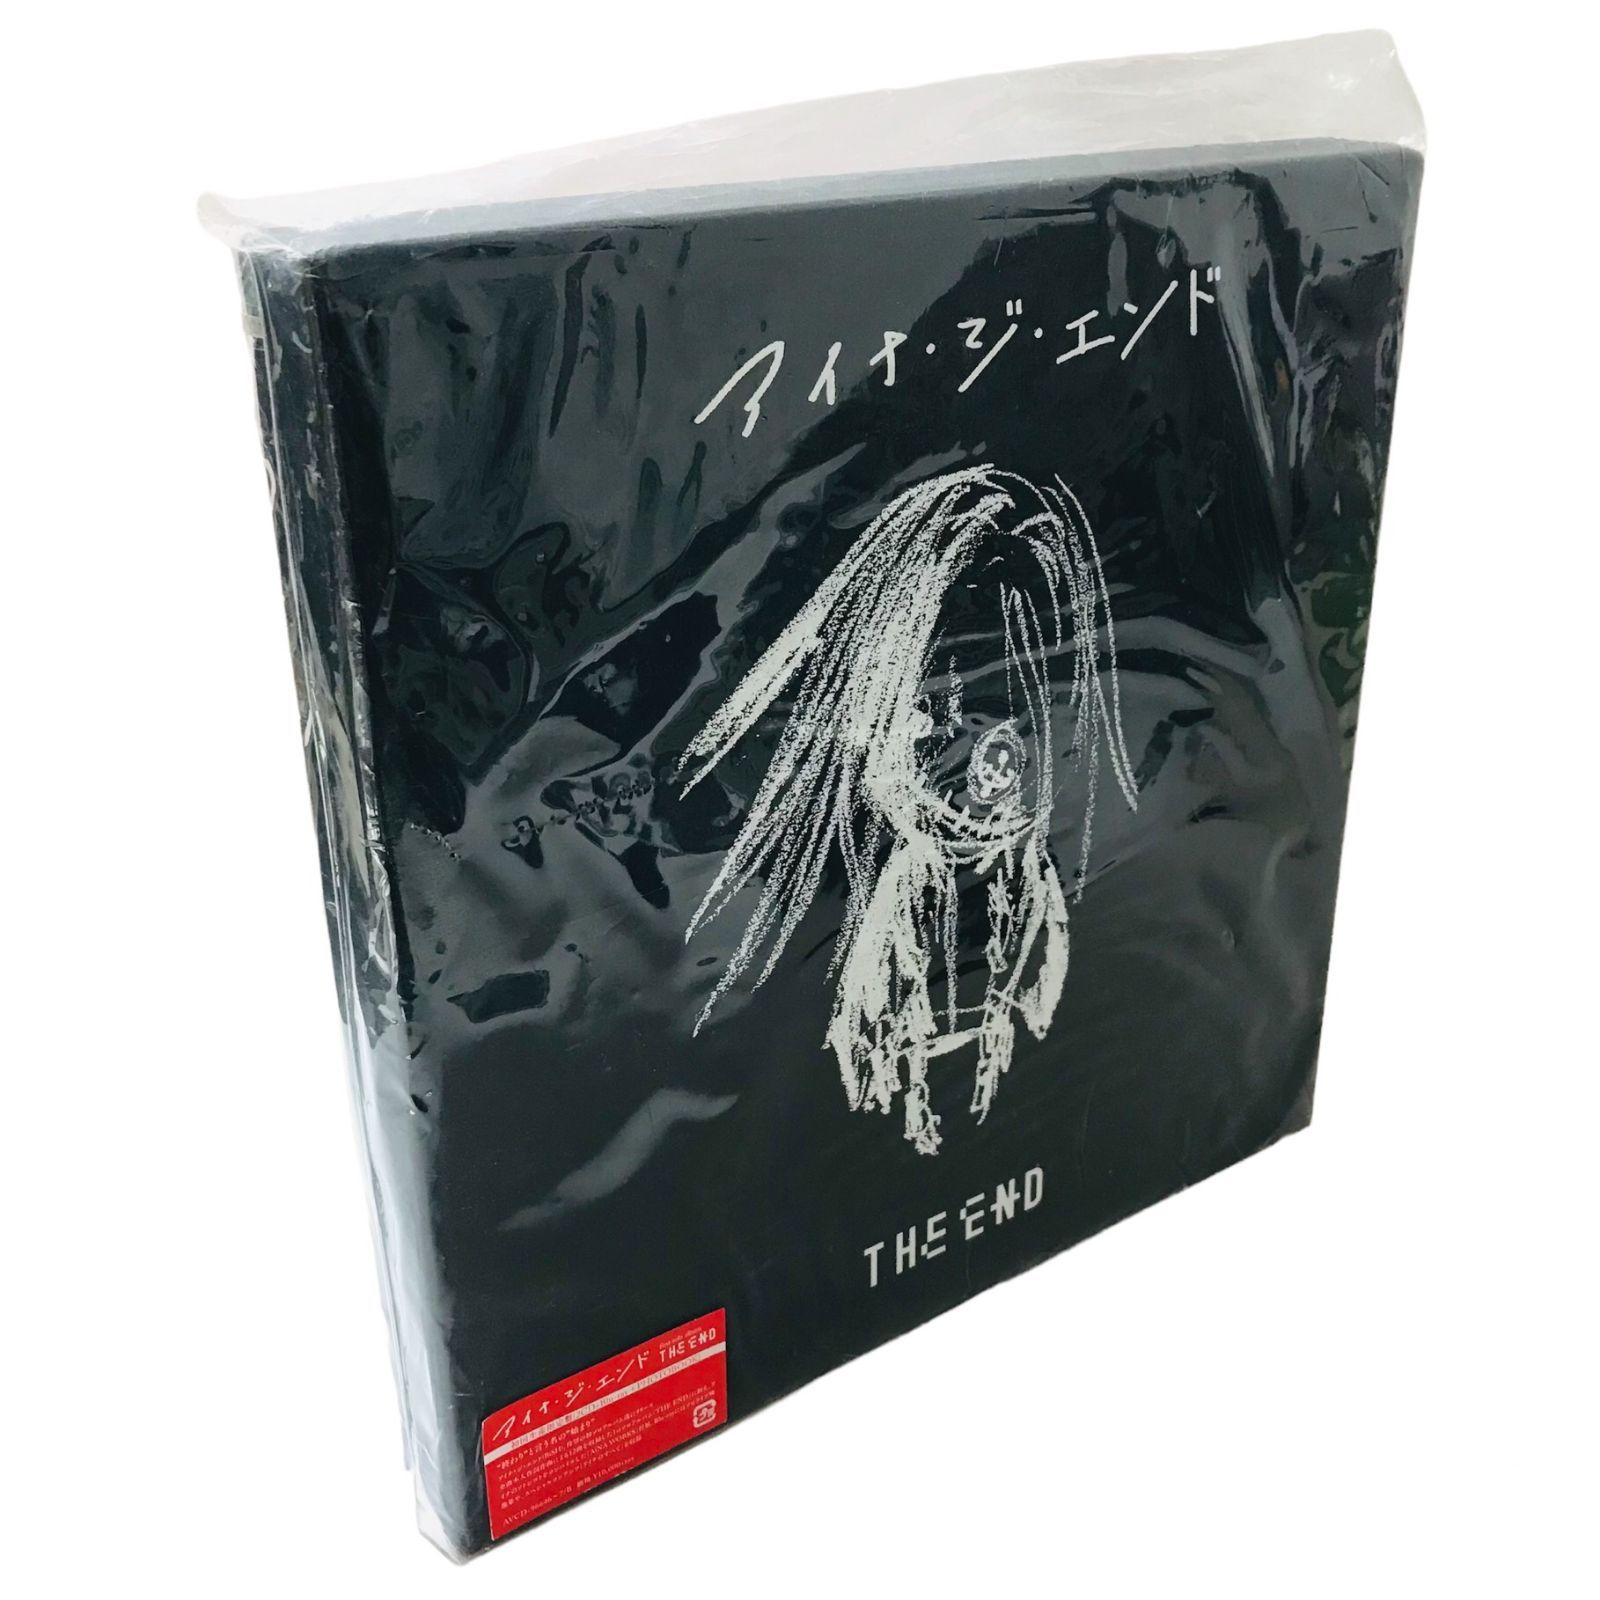 CD 初回限定盤 THE END アイナ・ジ・エンド BiSH - メルカリ